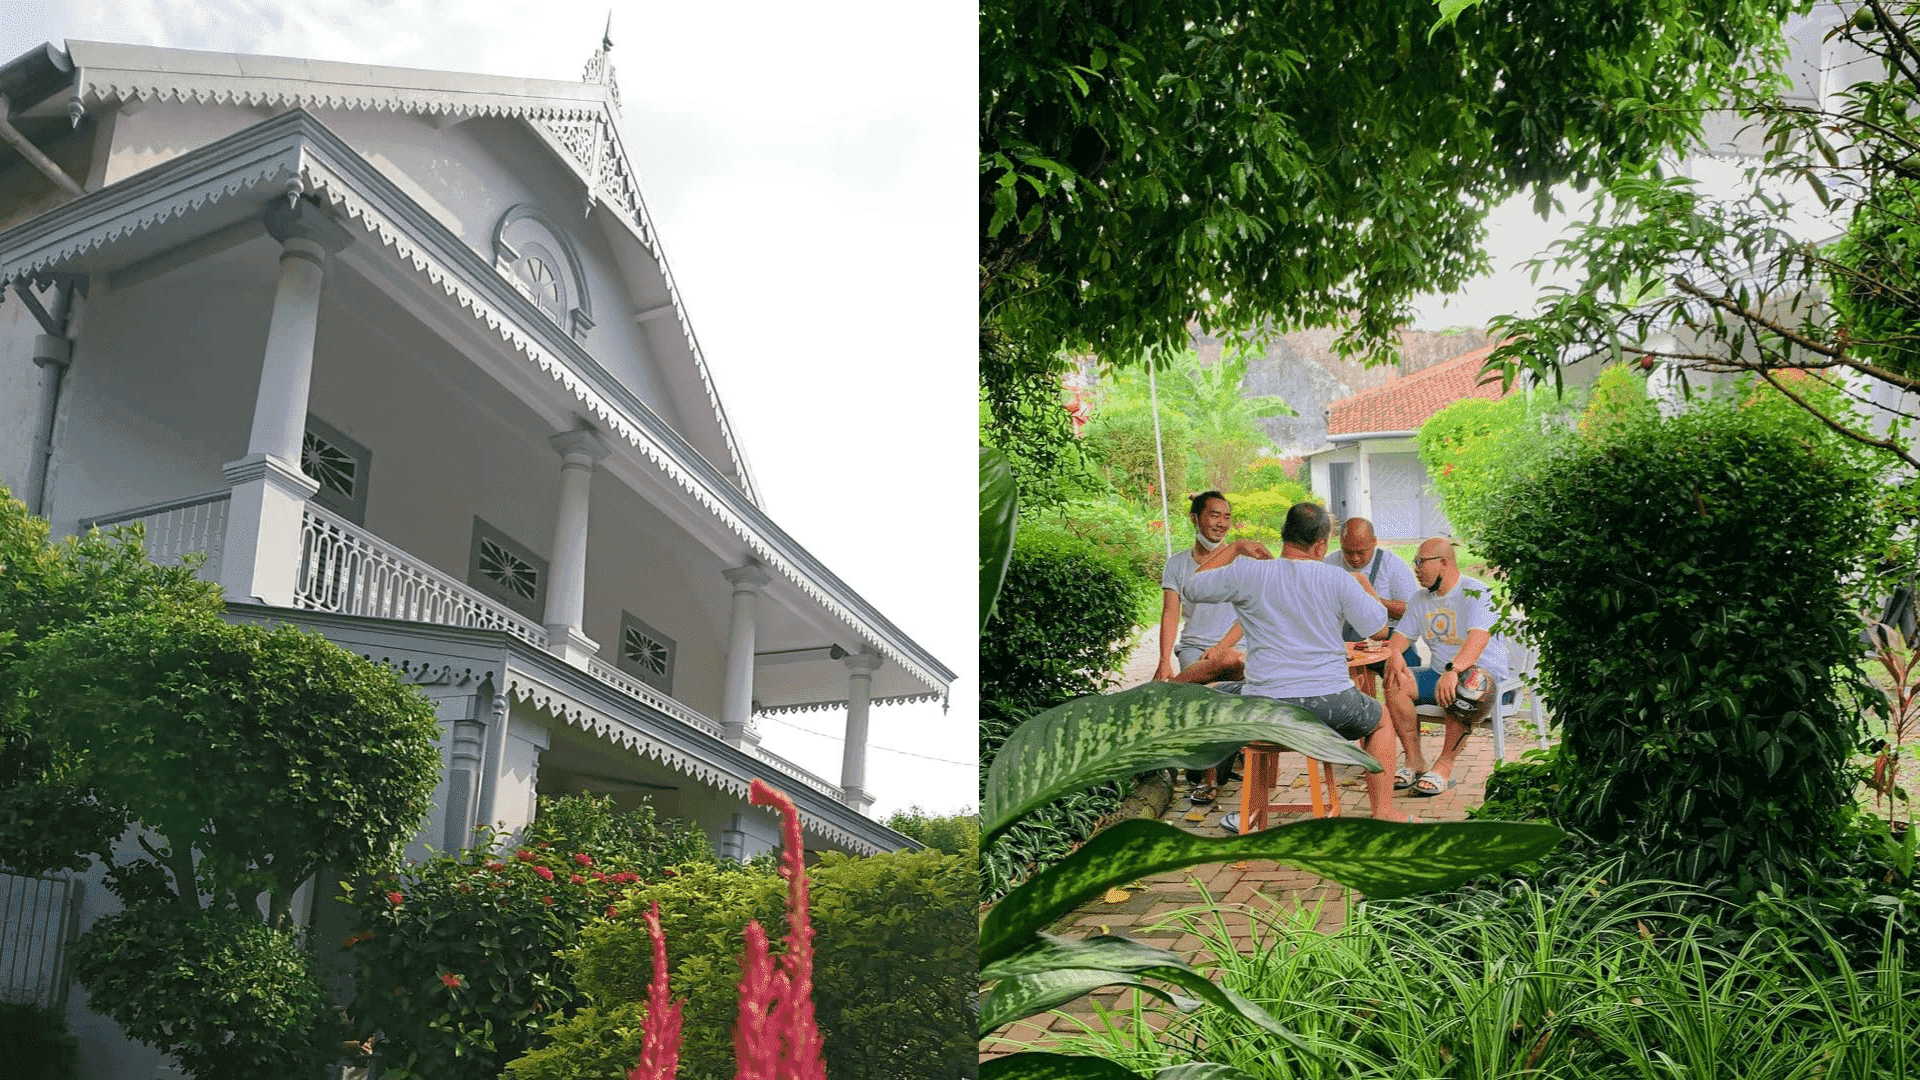 Rumah dan halaman asri membangun suasana kerasan 'seperti di rumah.' (instagram/dharmaboutiqueroastery)